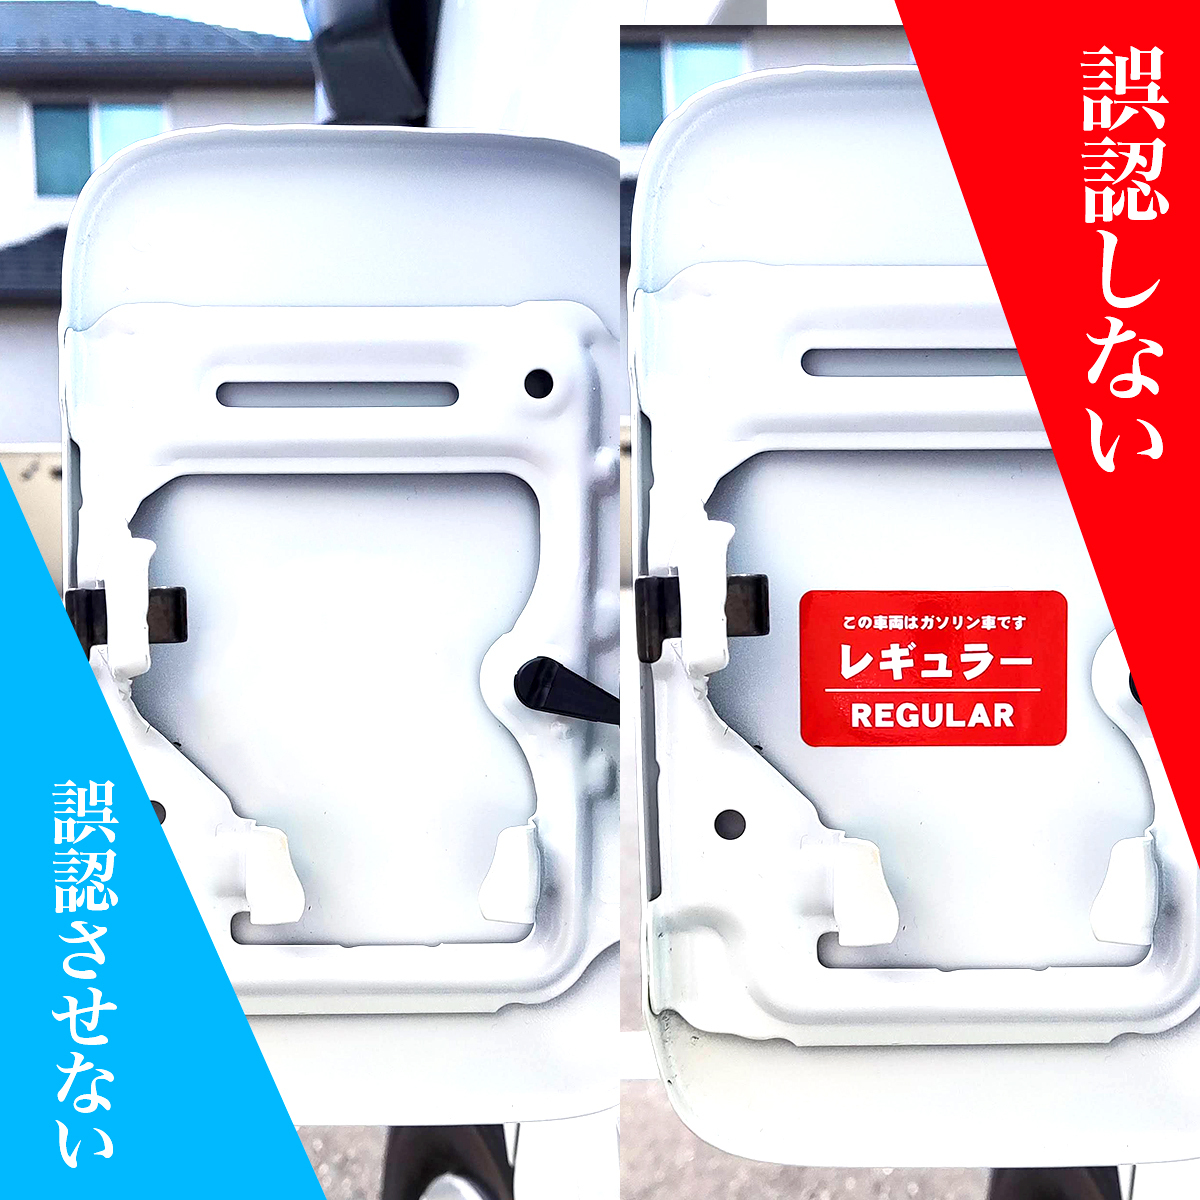 送料無料 給油口キャップ用燃料表示ステッカー&長方形ステッカーセット レギュラー ガソリン 油種間違い防止 レッド 日本製 EX501975_画像4